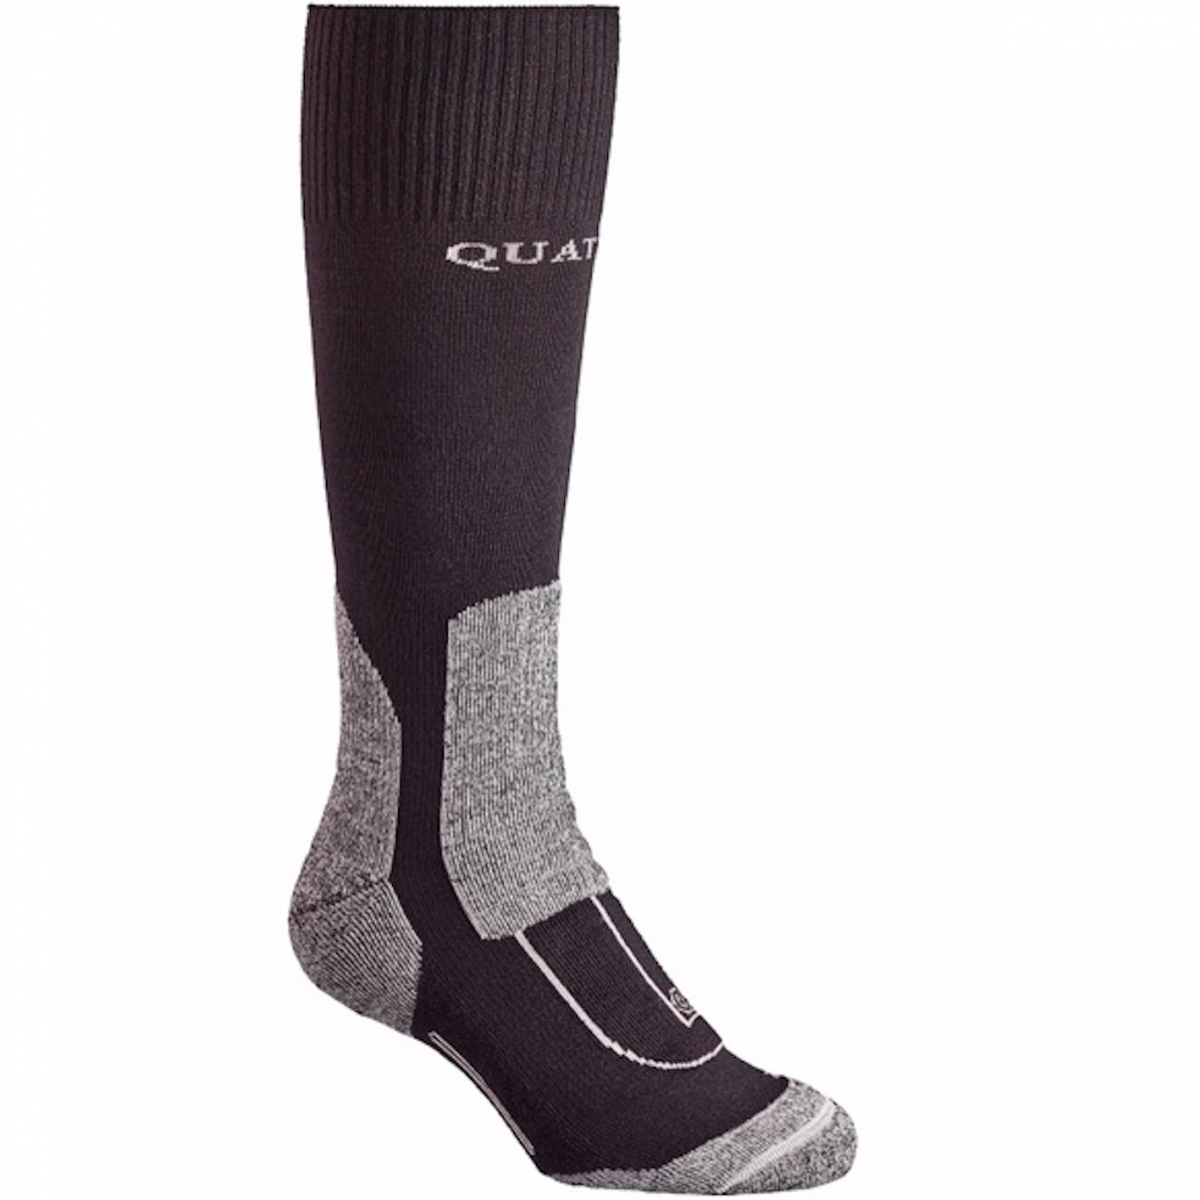 Skellerup Quatro Gumboot Sock